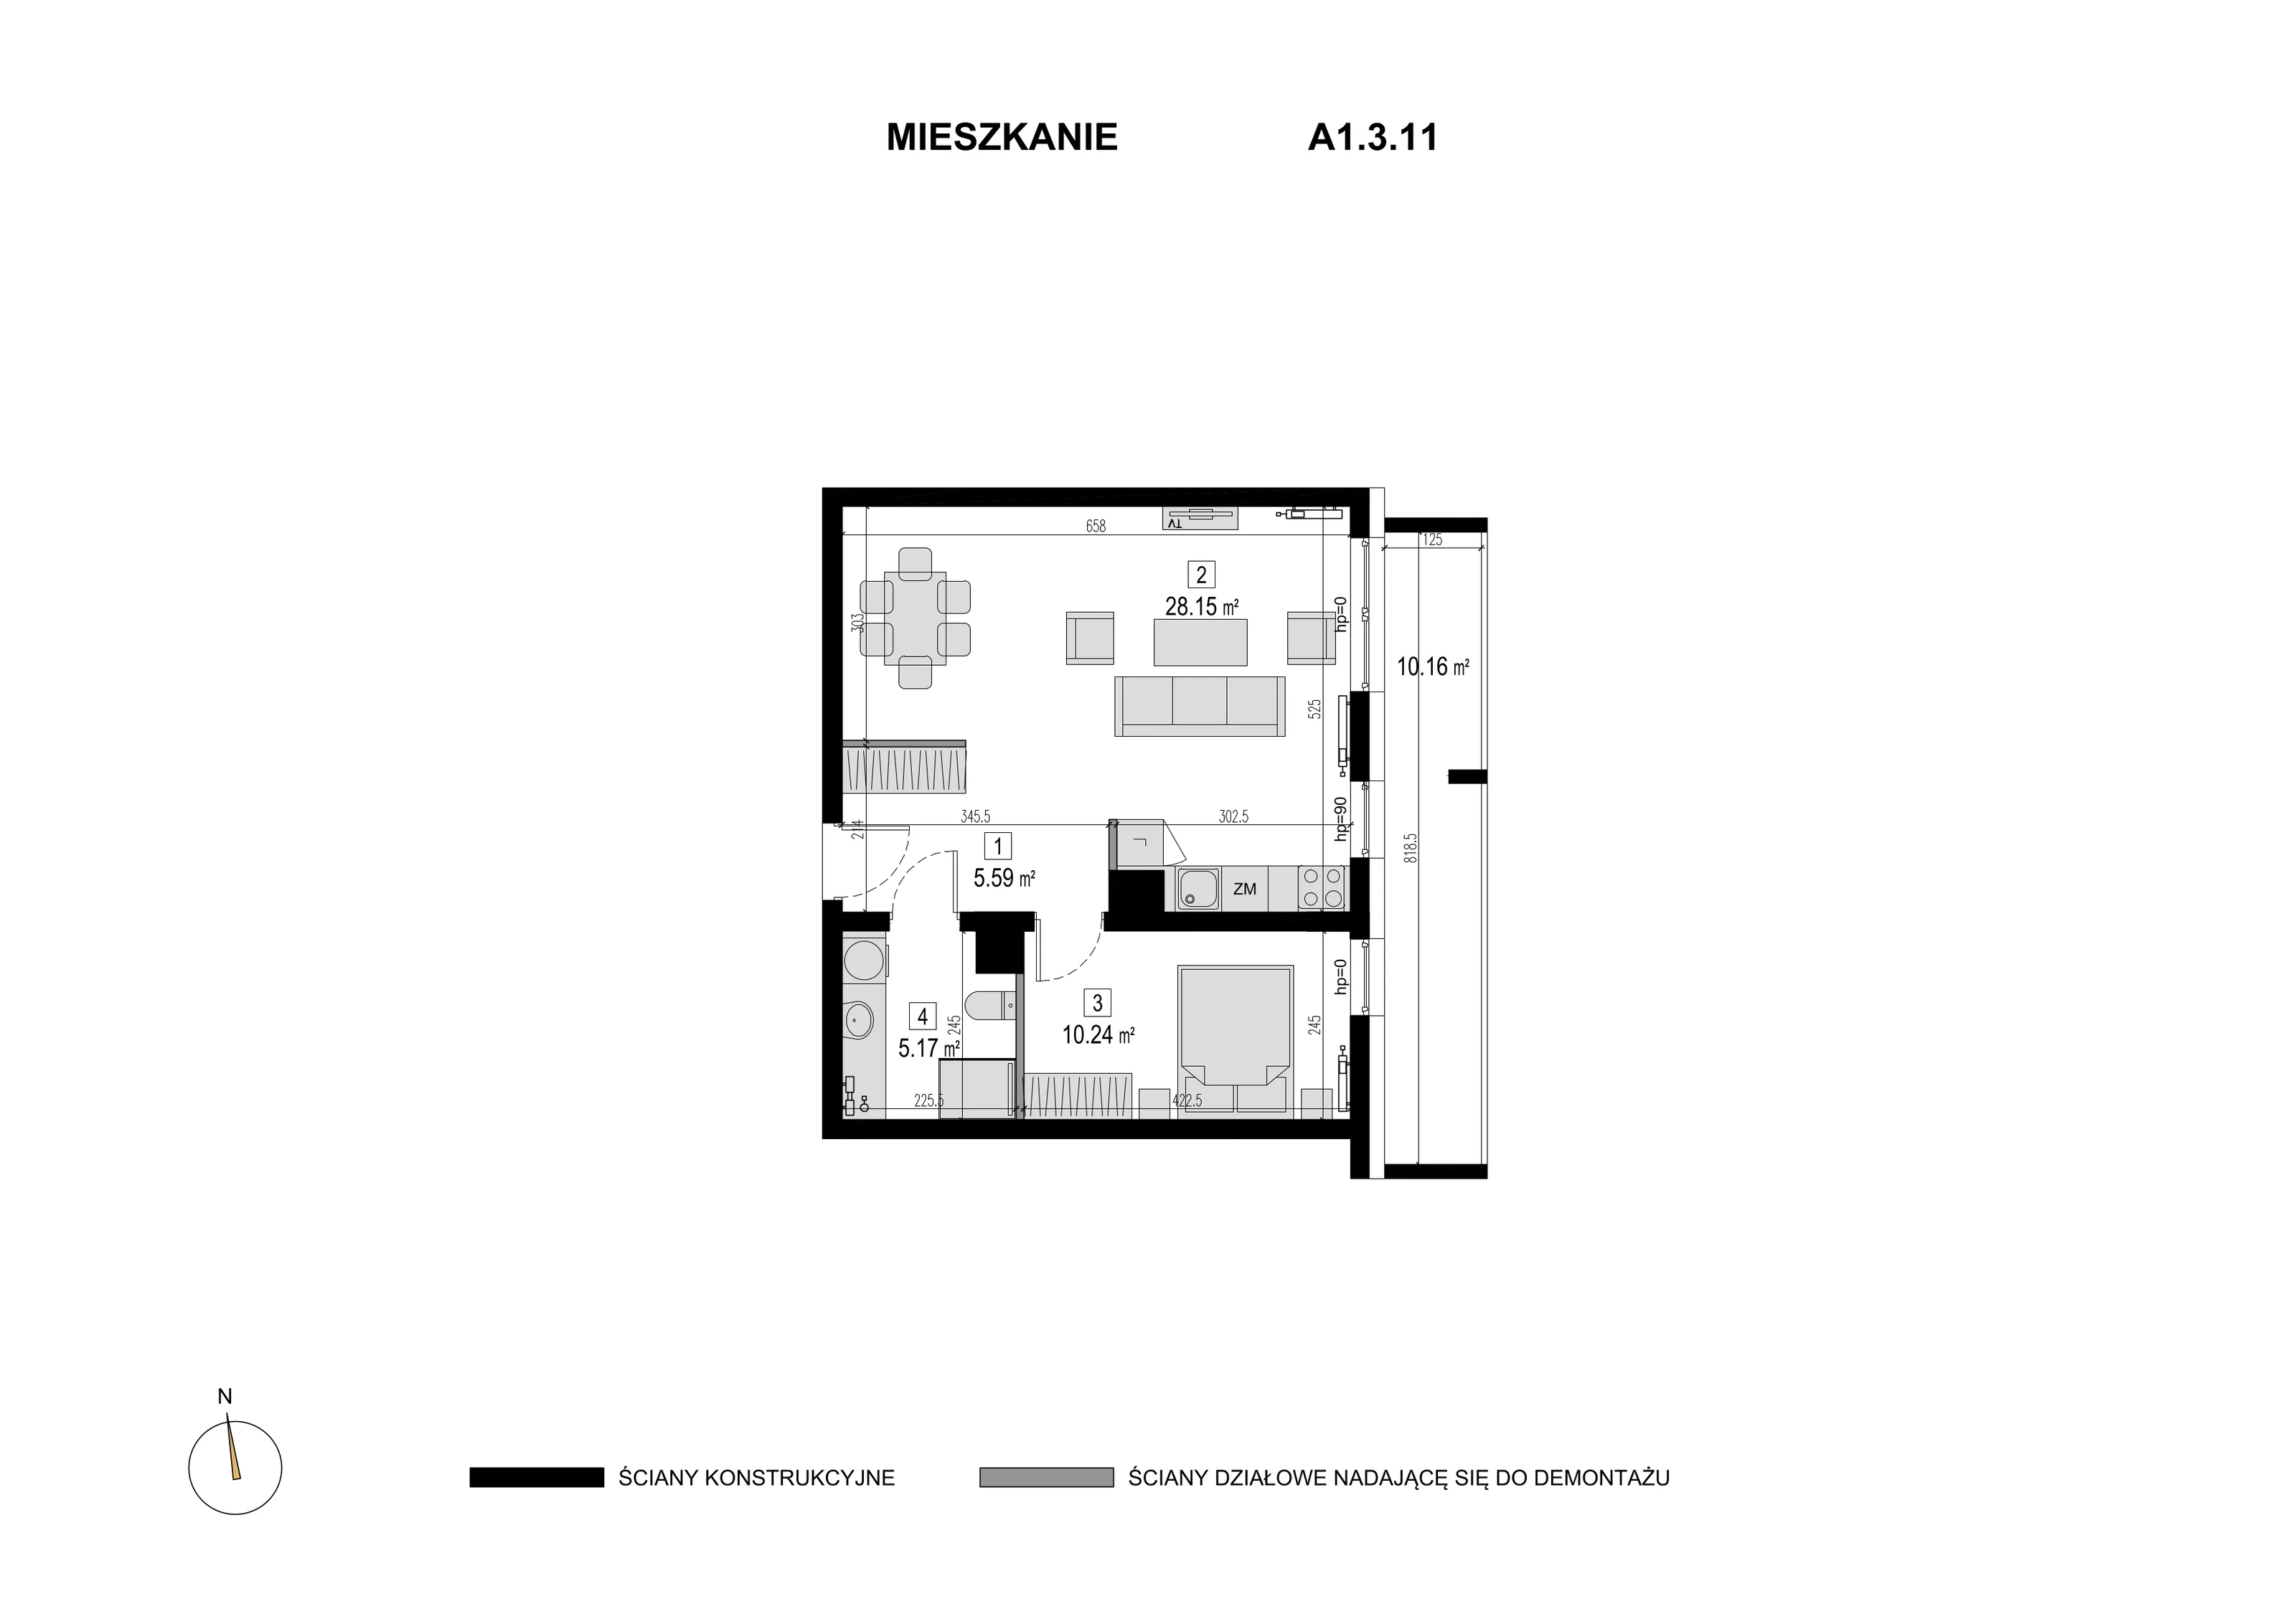 Mieszkanie 49,15 m², piętro 2, oferta nr A1.3.11, Novaforma, Legnica, ul. Chojnowska